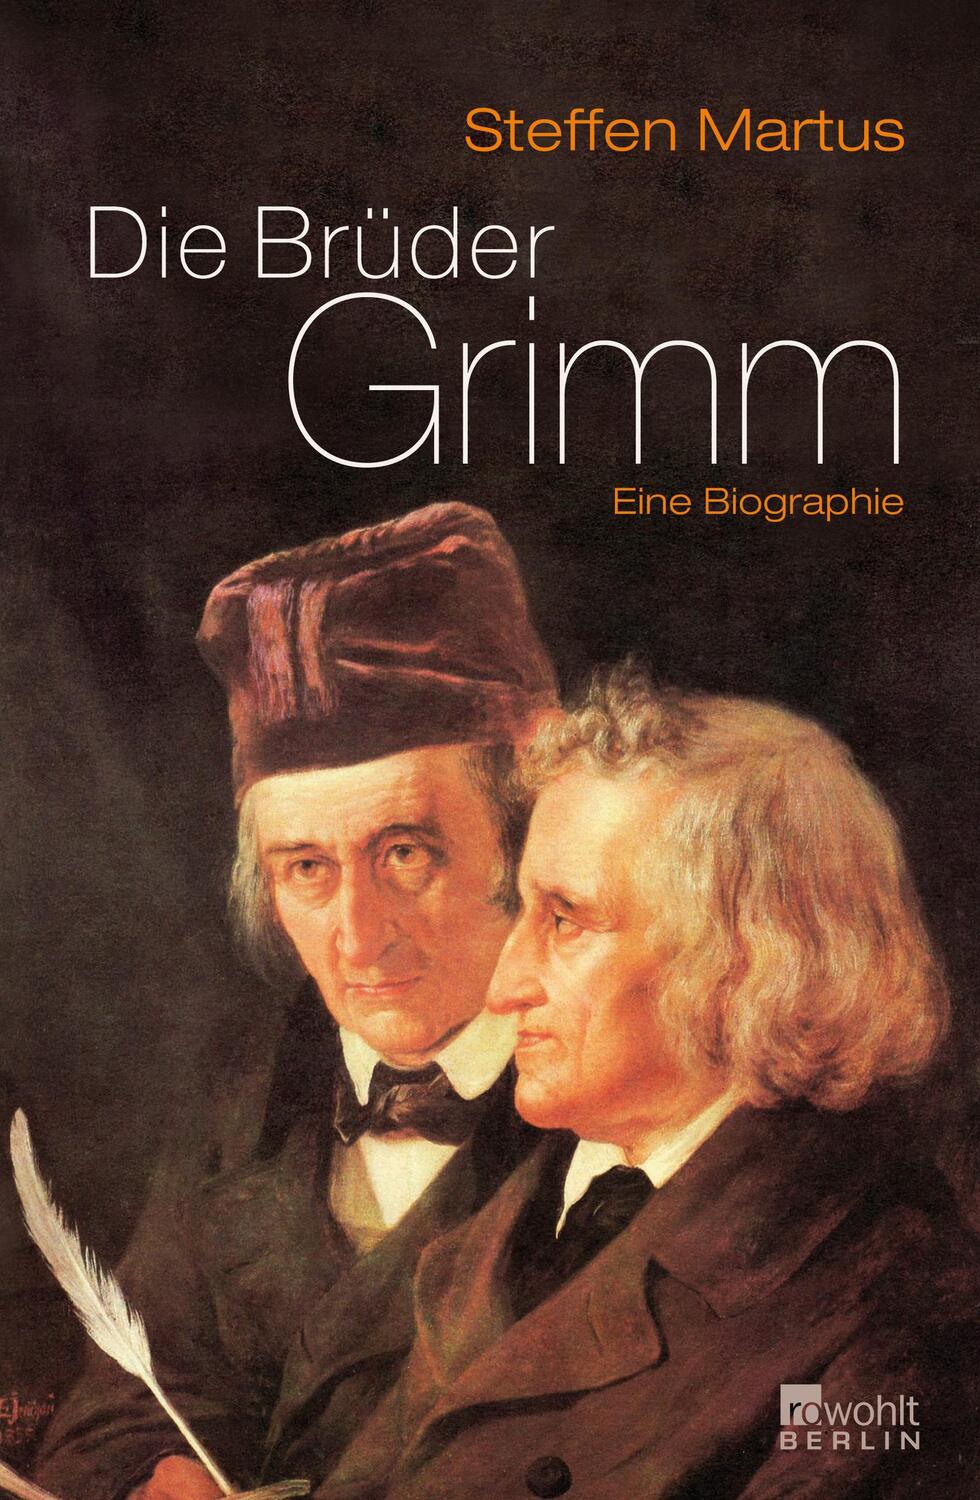 Die Brüder Grimm - Martus, Steffen